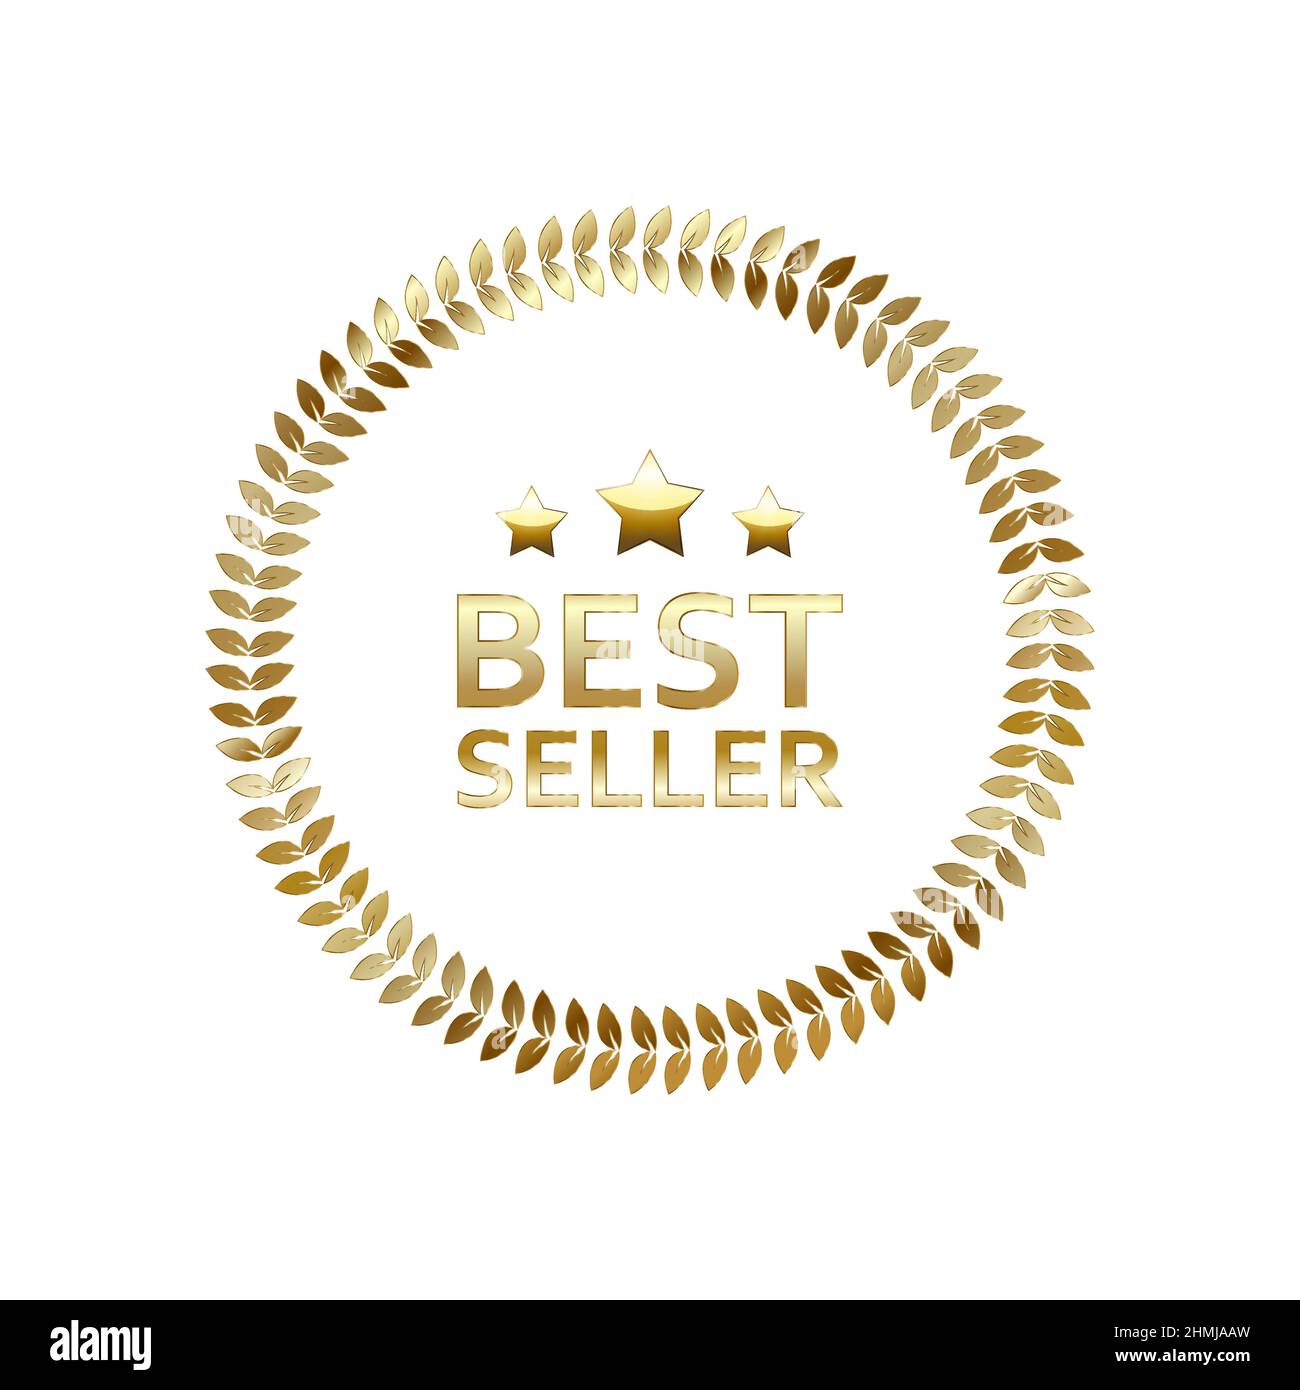 Best seller icon design with laurel, best seller badge logo